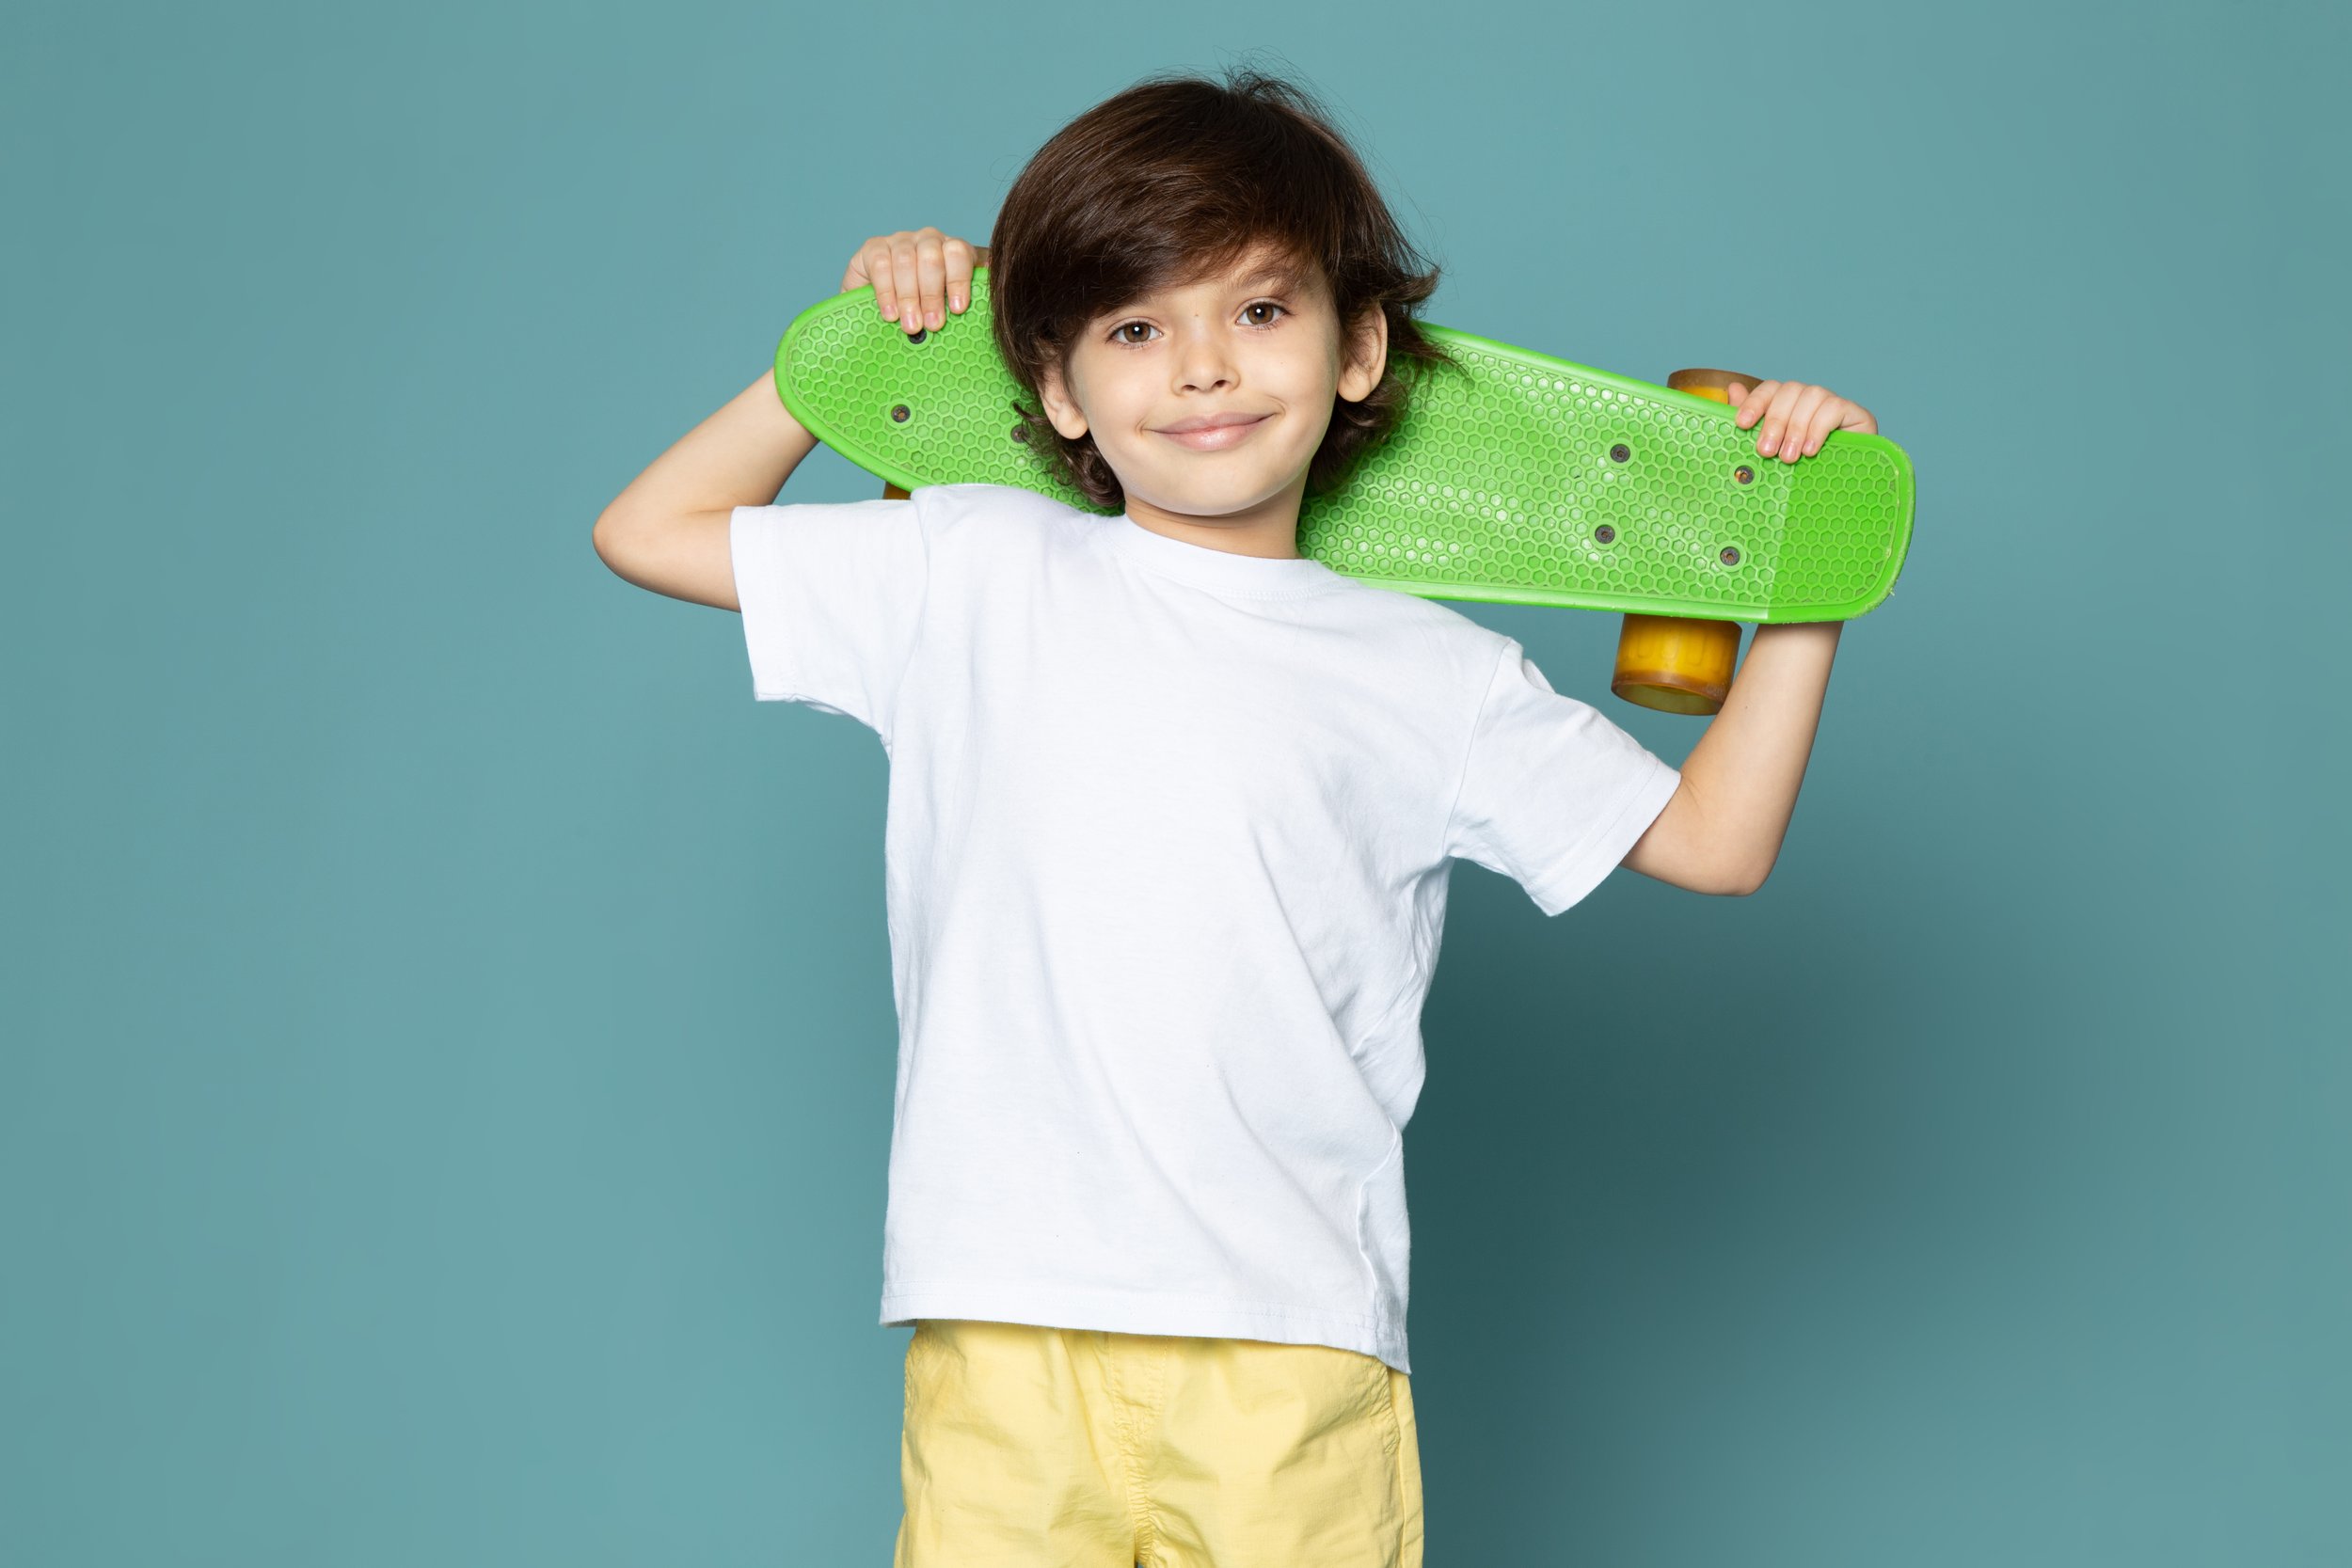 front-view-smiling-cute-kid-white-t-shirt-holding-skateboard-blue-floor.jpg